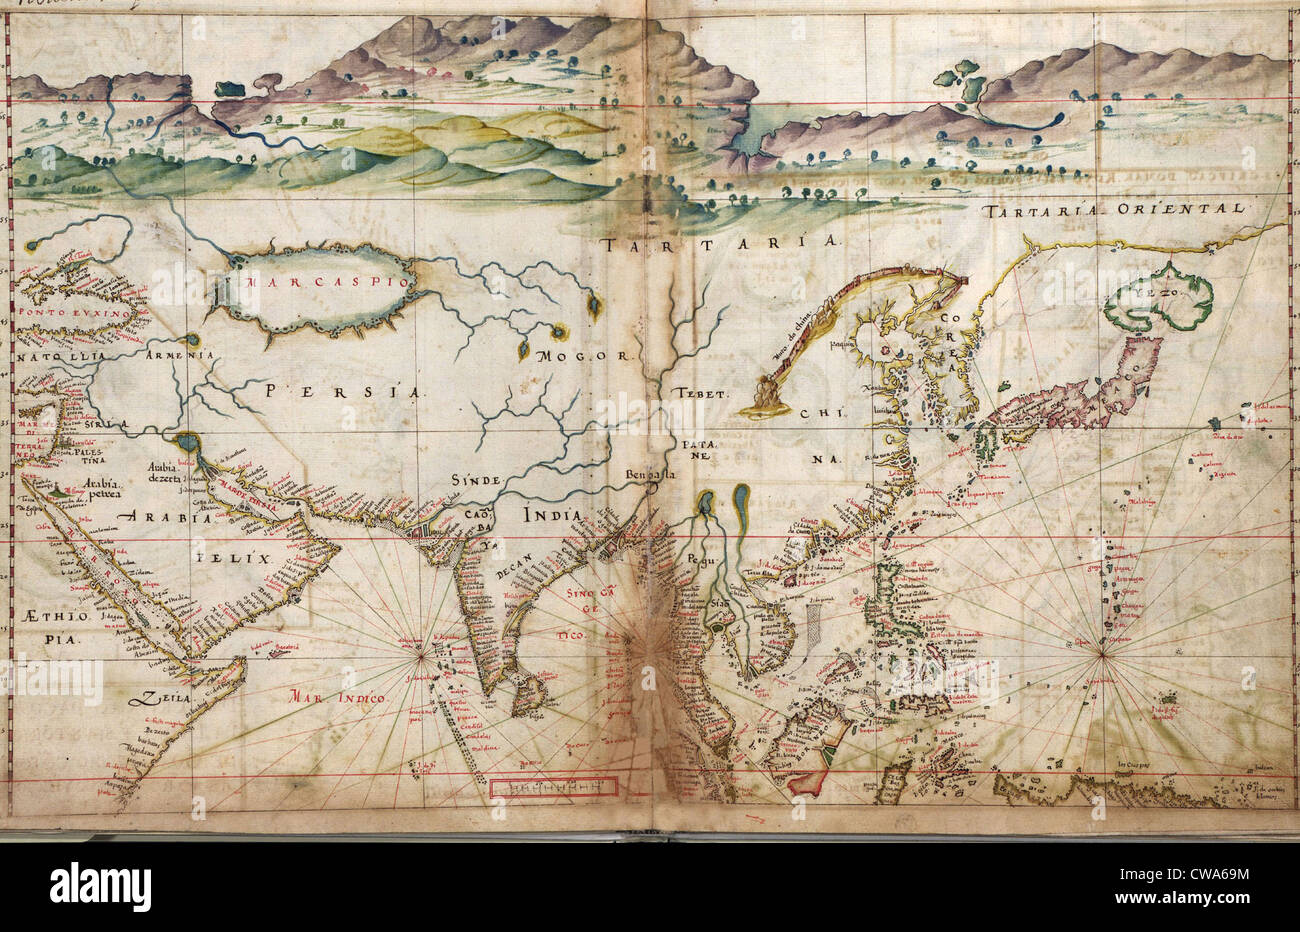 1630 mappe portoghese, che illustra i dettagli di asiatici fortificazioni costiere e città, raccolte da un secolo di esplorazioni portoghesi Foto Stock